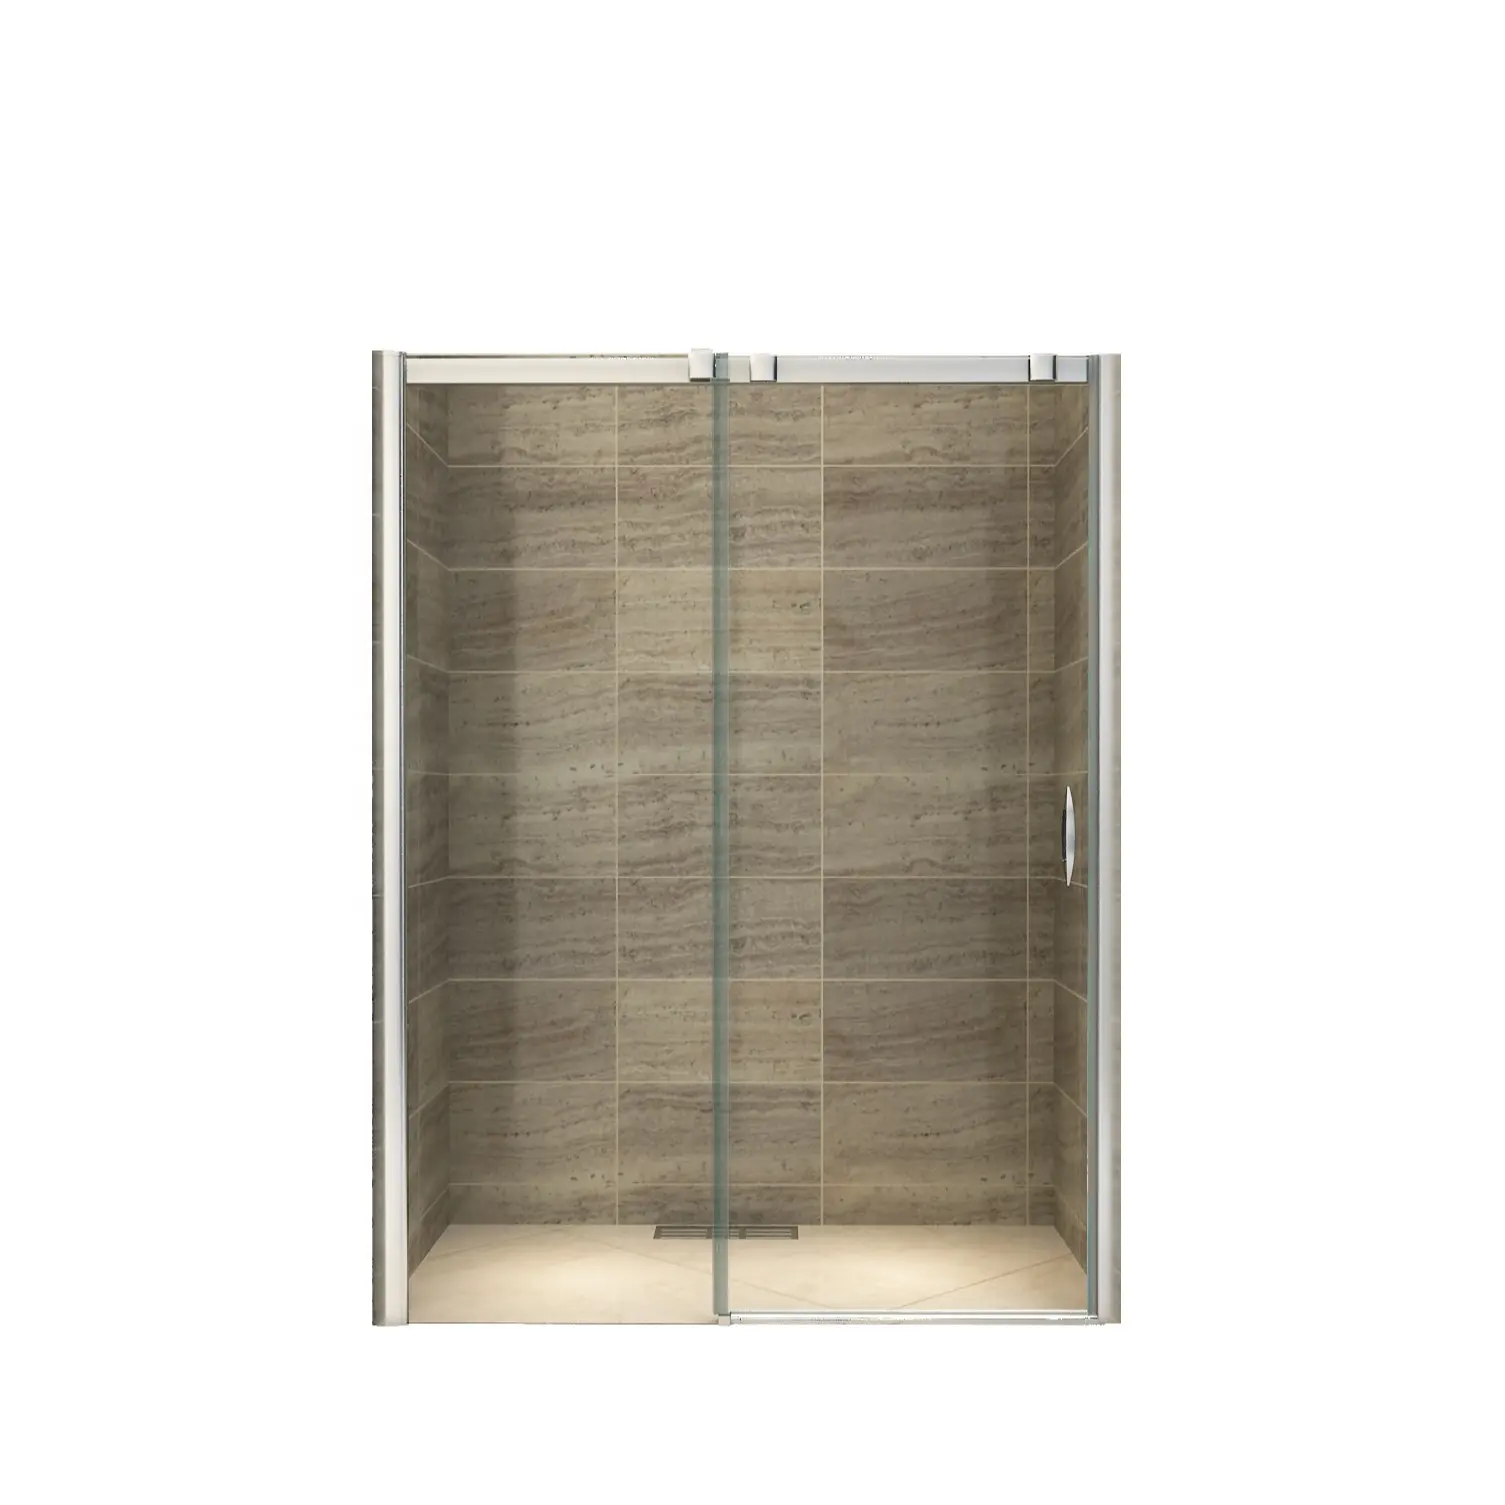 Bagno doccia scorrevole in vetro cabina cabina cabina bagno completo doccia chiusa